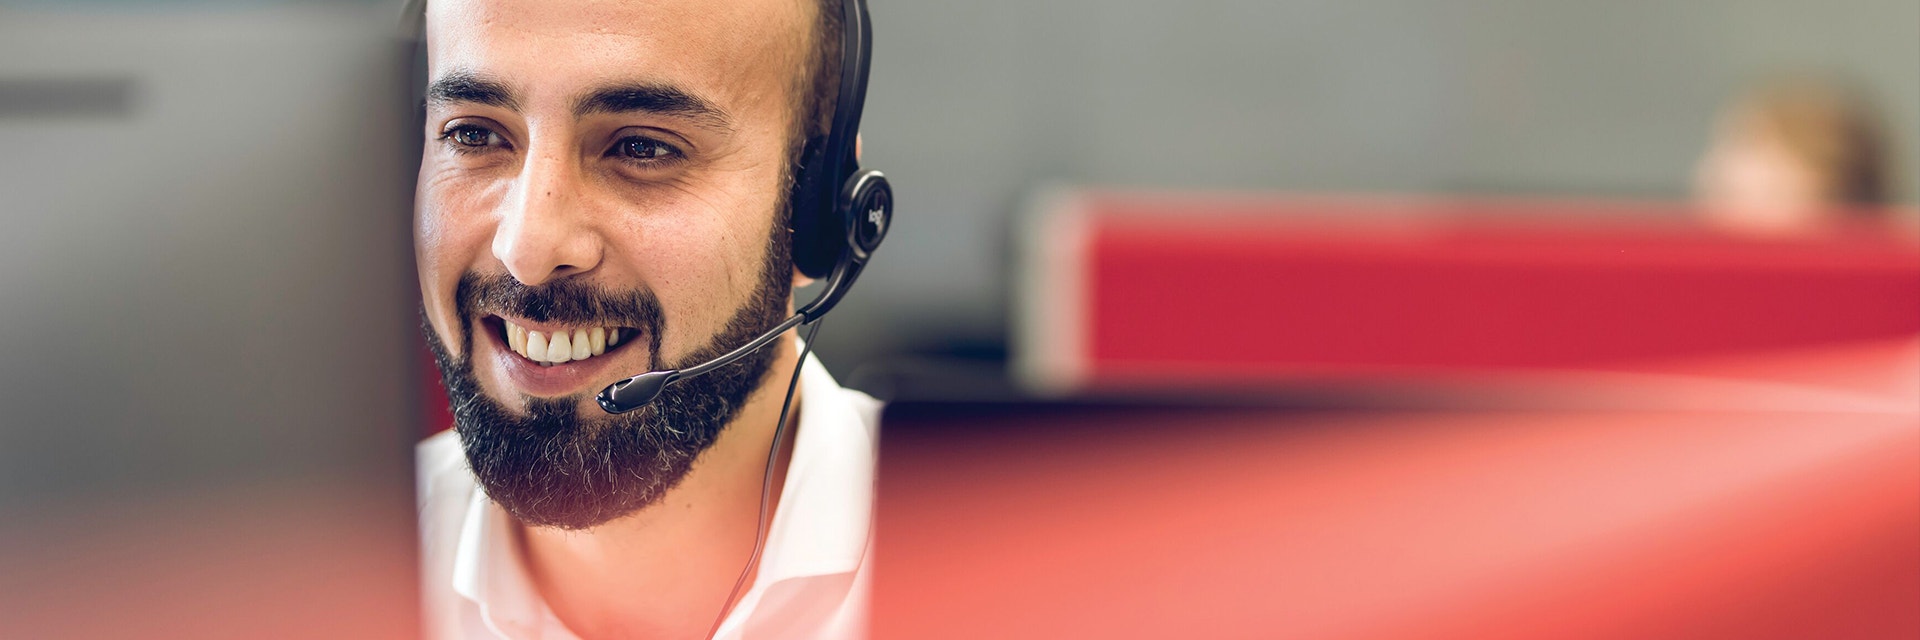 Ein Kundendienstmitarbeiter lächelt, während er auf einen Computer schaut und ein Headset trägt